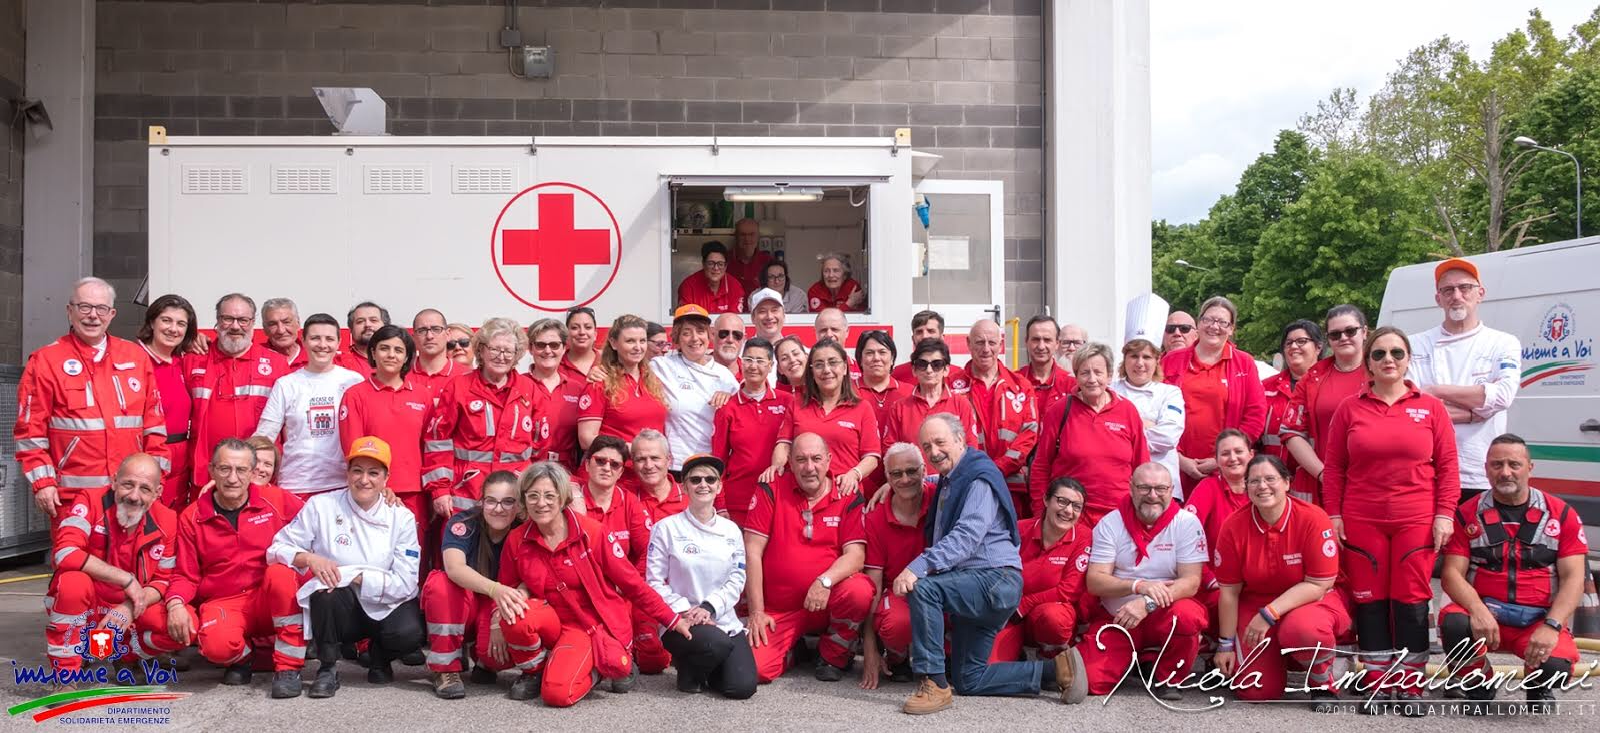 Croce Rossa Italiana - Comitato di Arezzo